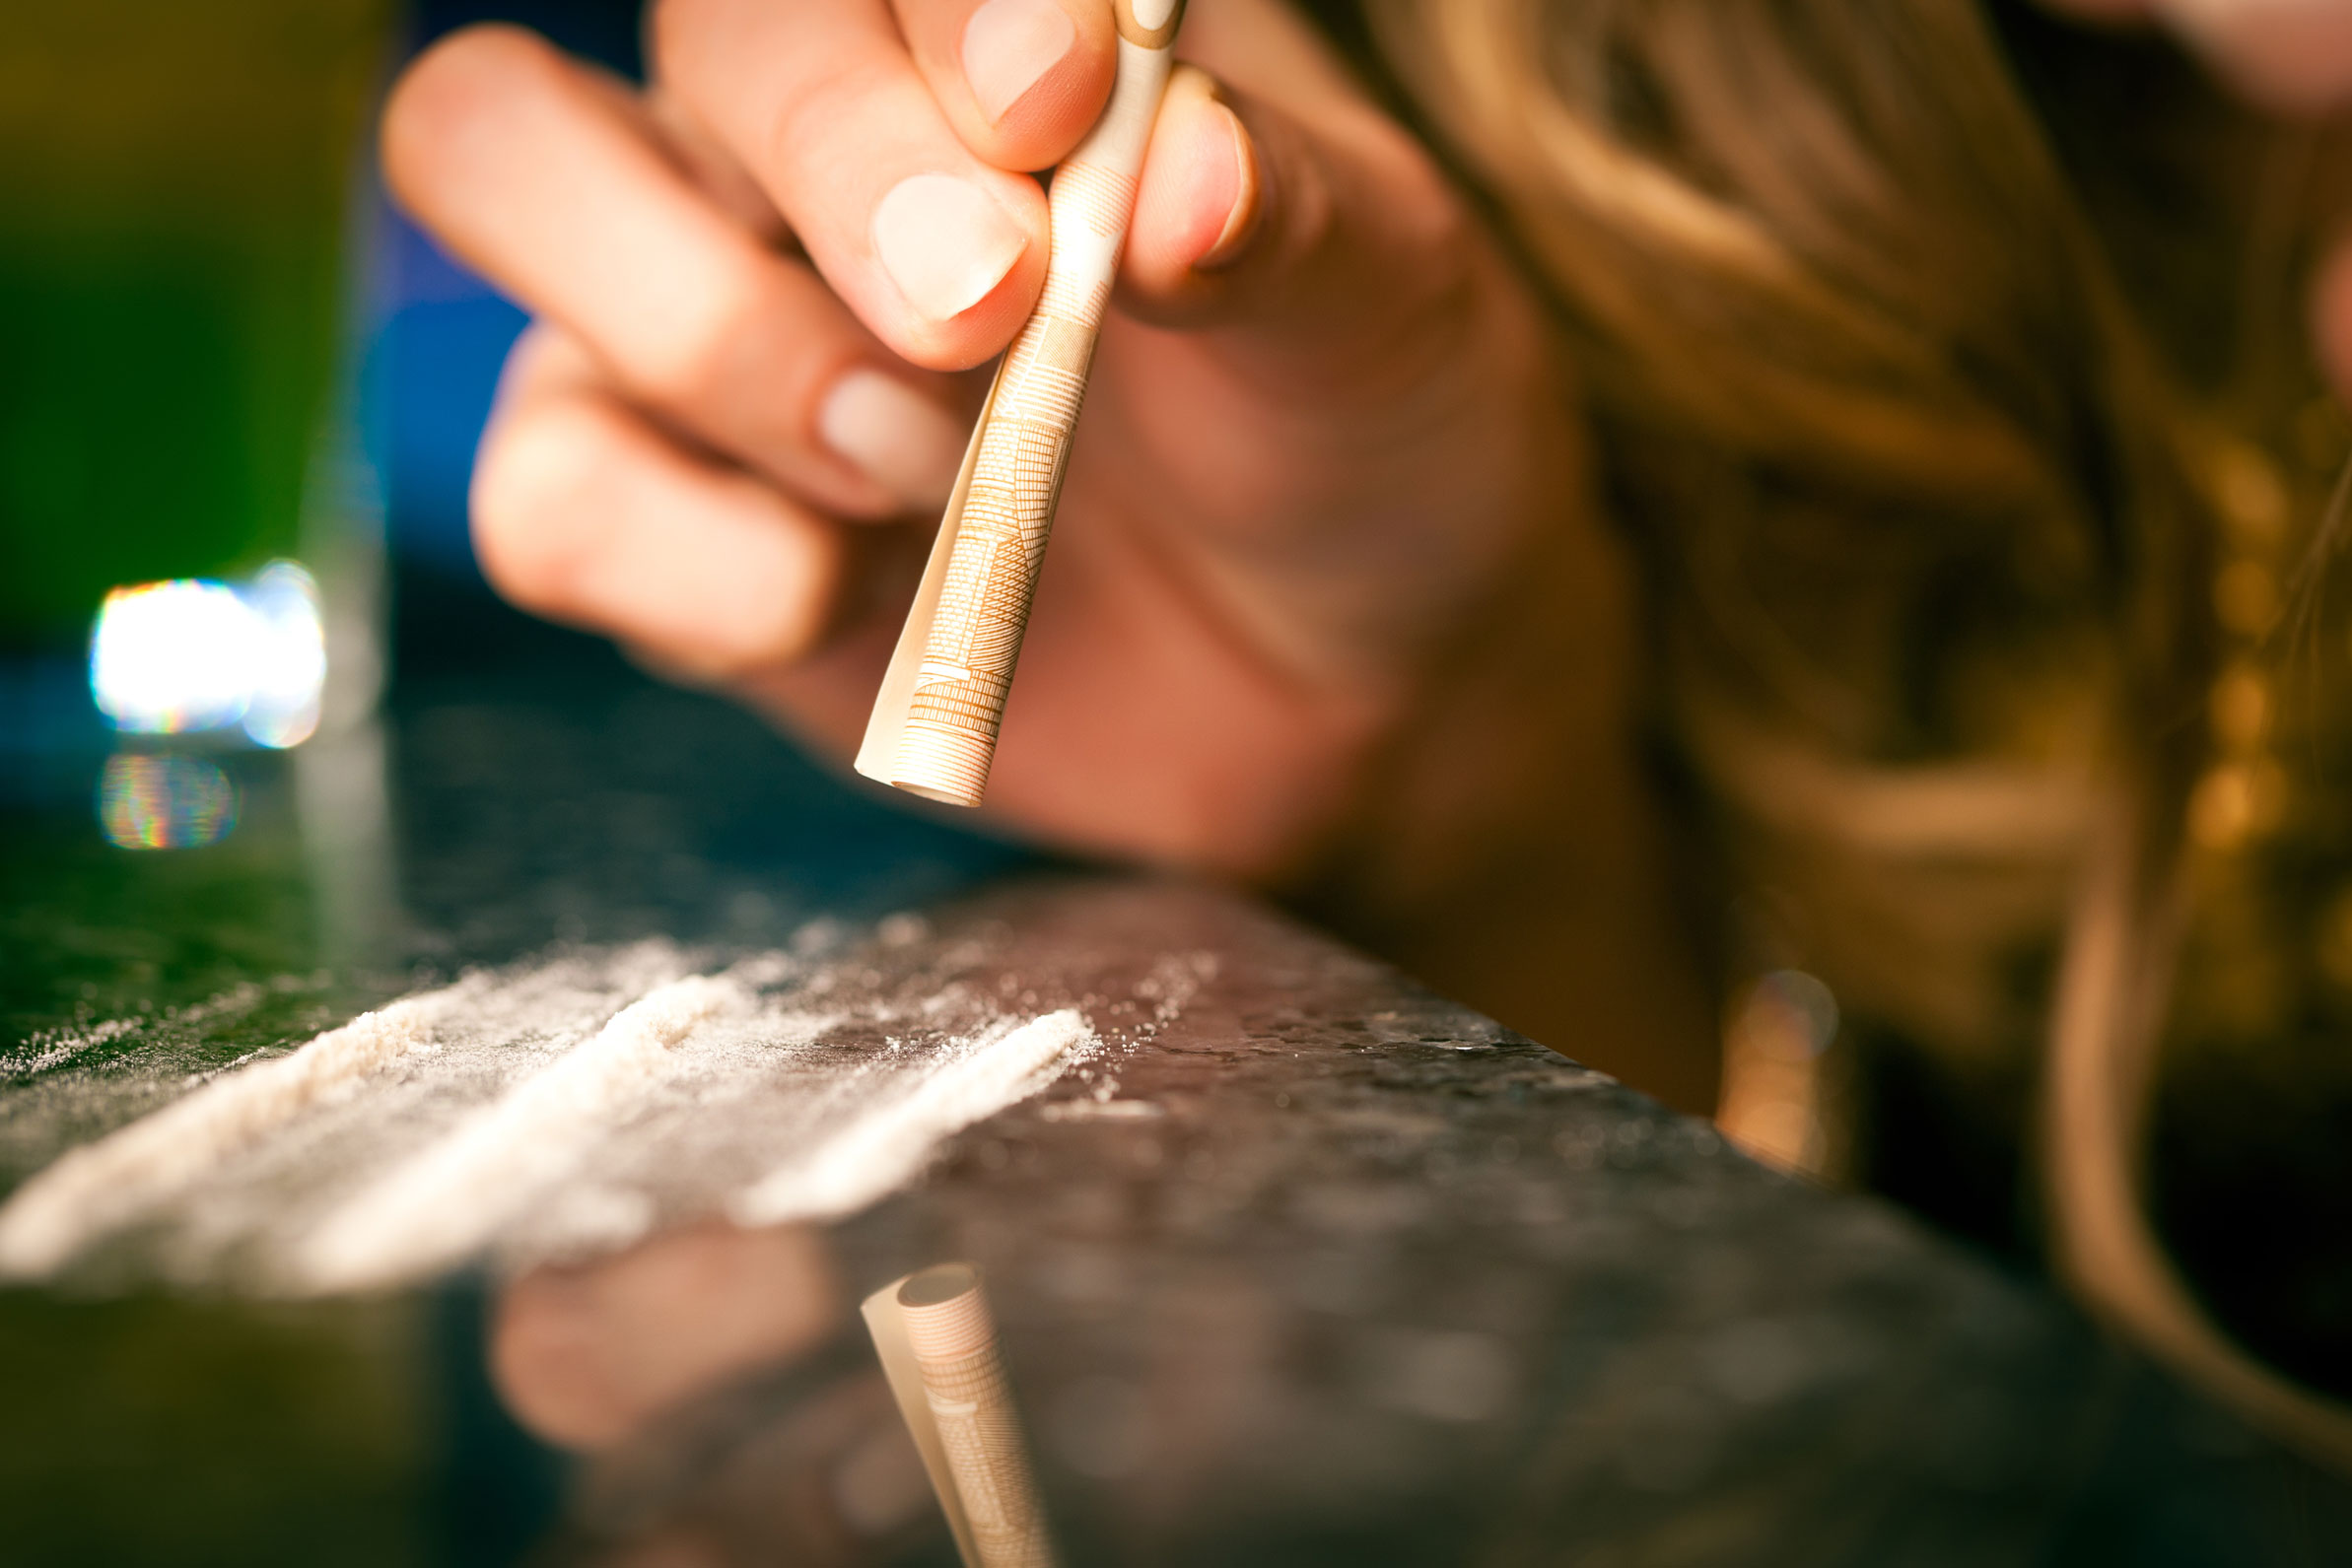 Exportación de cocaína en América Latina se multiplica, dicen expertos 